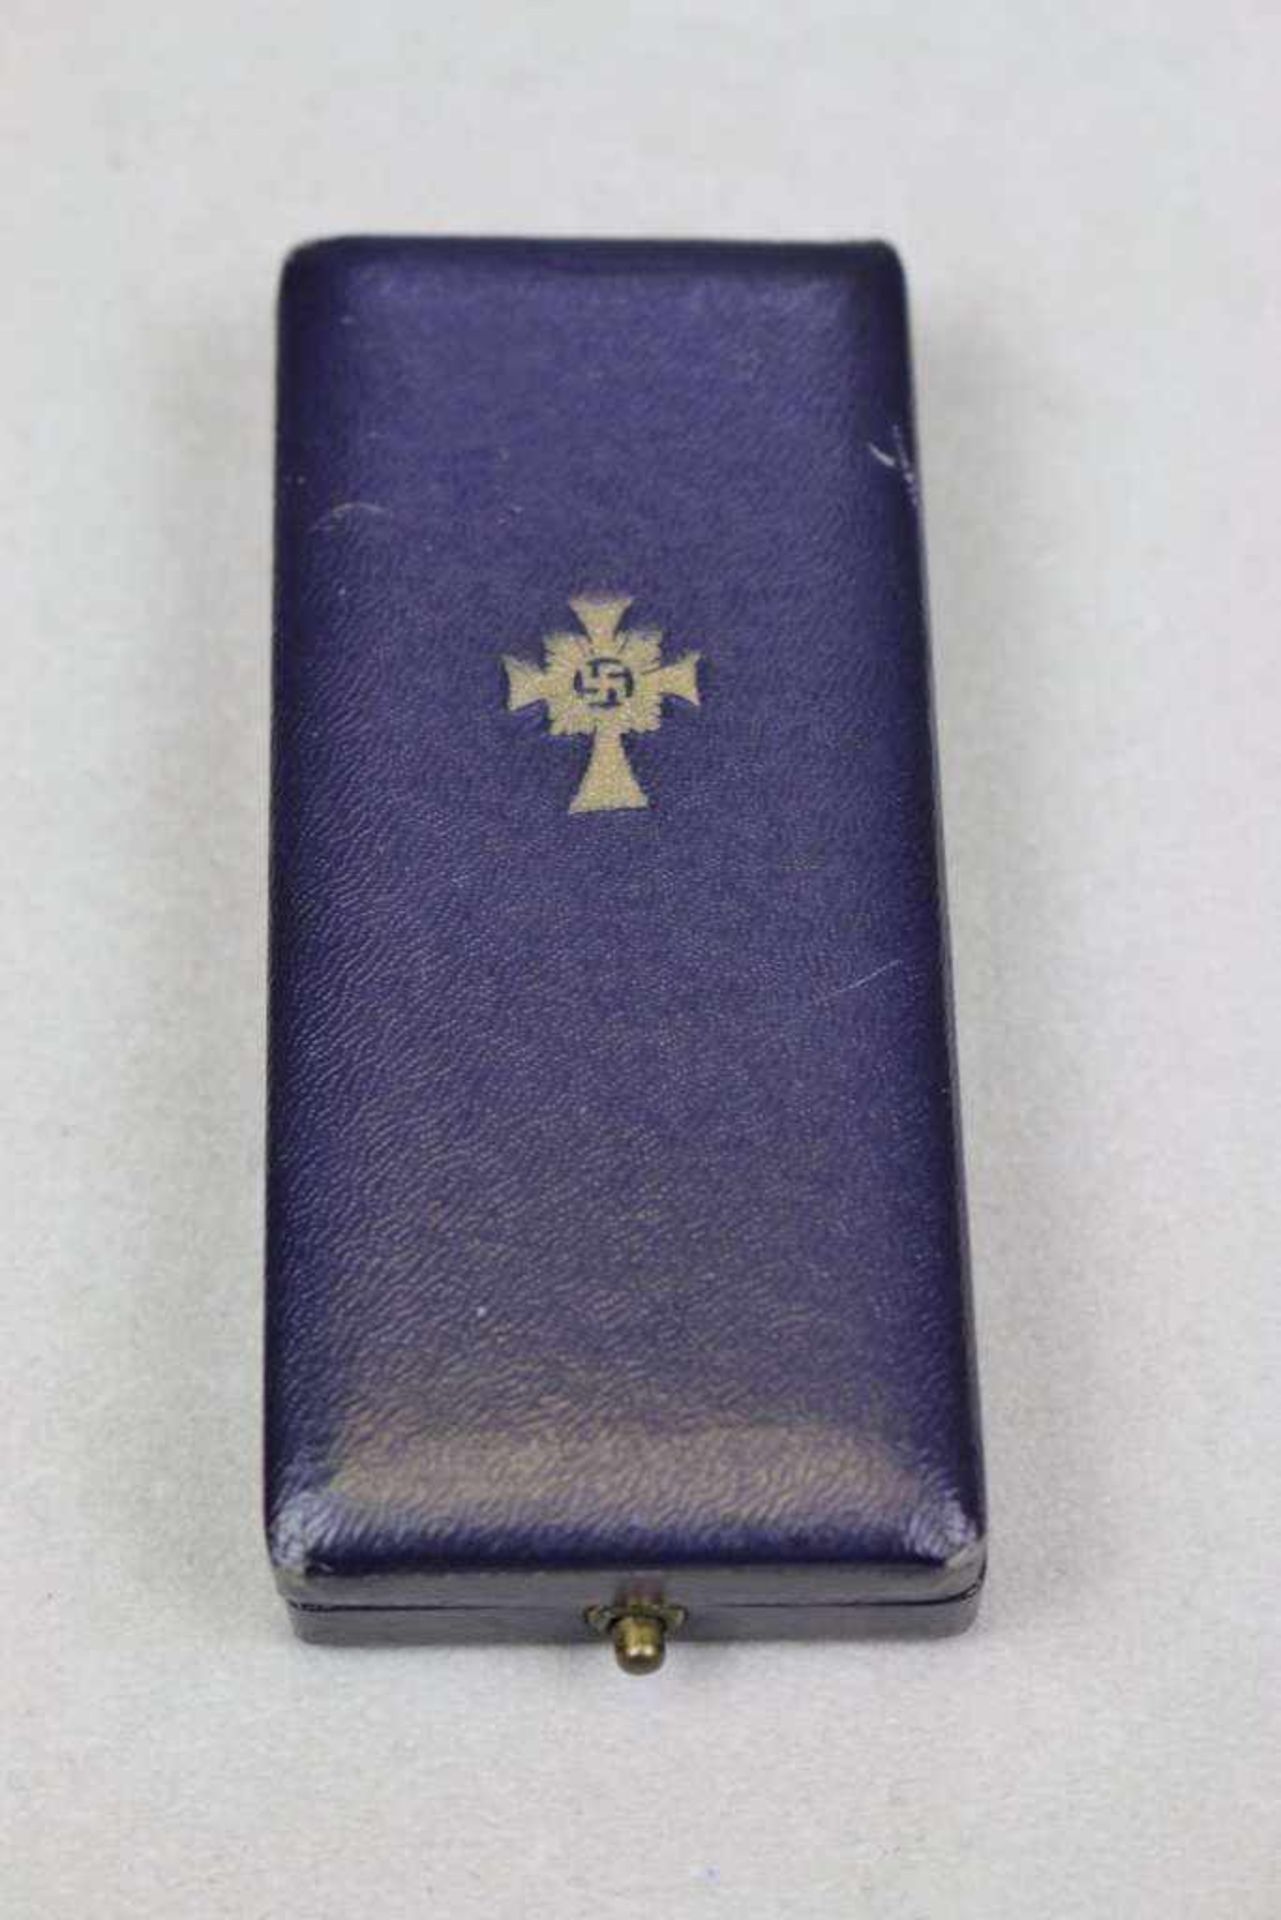 Mutterkreuz in Gold im Etui. Schachtel mit Hersteller "Liefergemeinschaft Pforzheimer Innungen", - Bild 2 aus 2